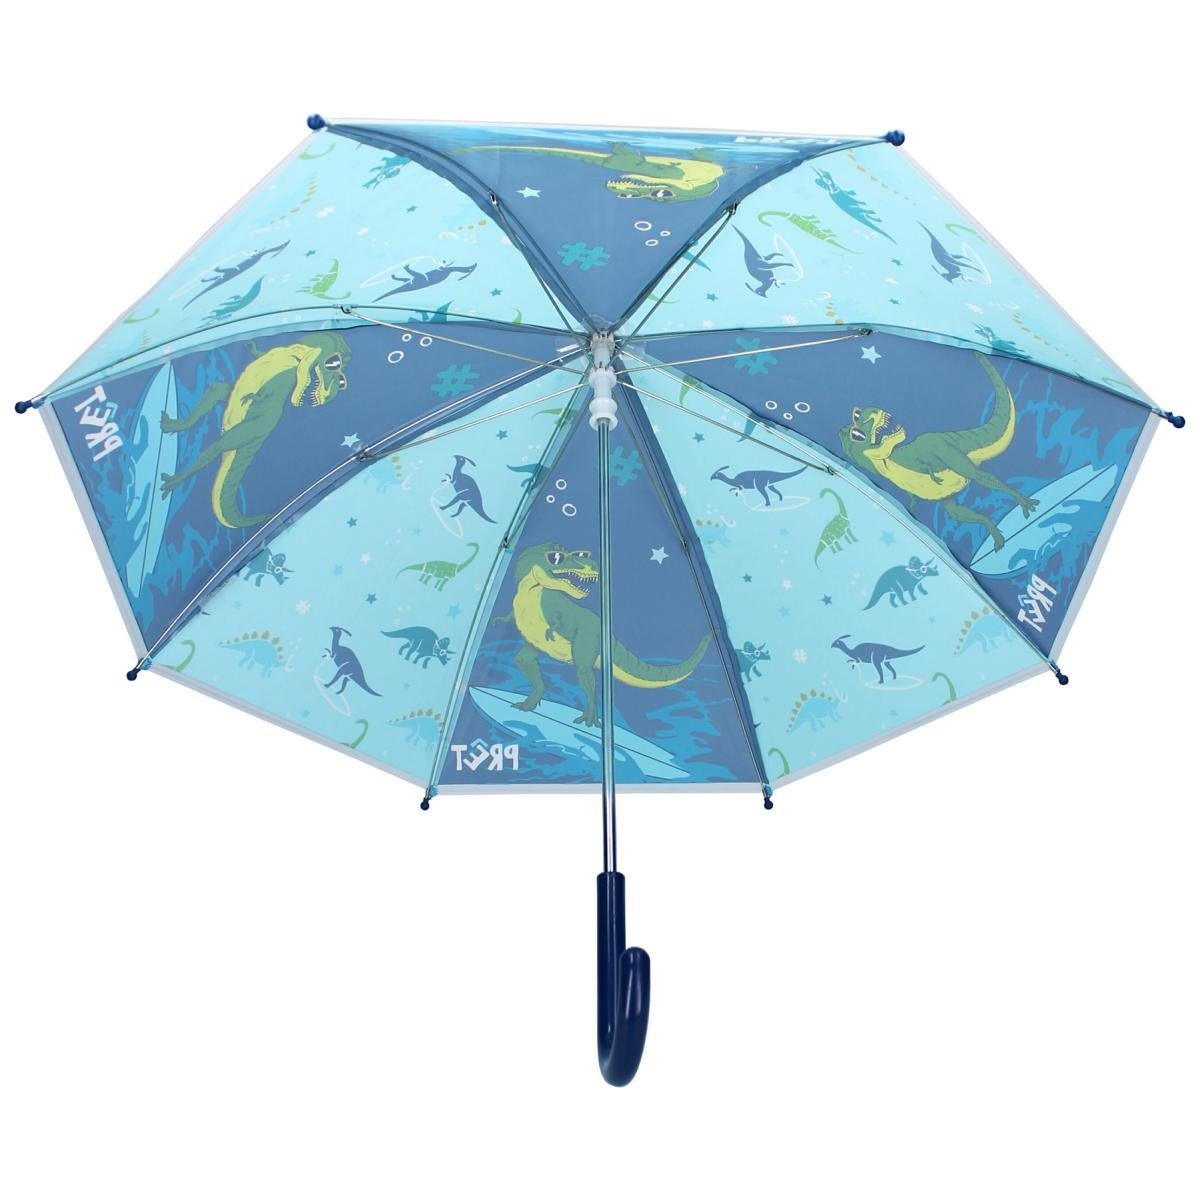 & Stockregenschirm Regenschirm Daydreams Dino Pret Vadobag Kinderschirm Rainbows